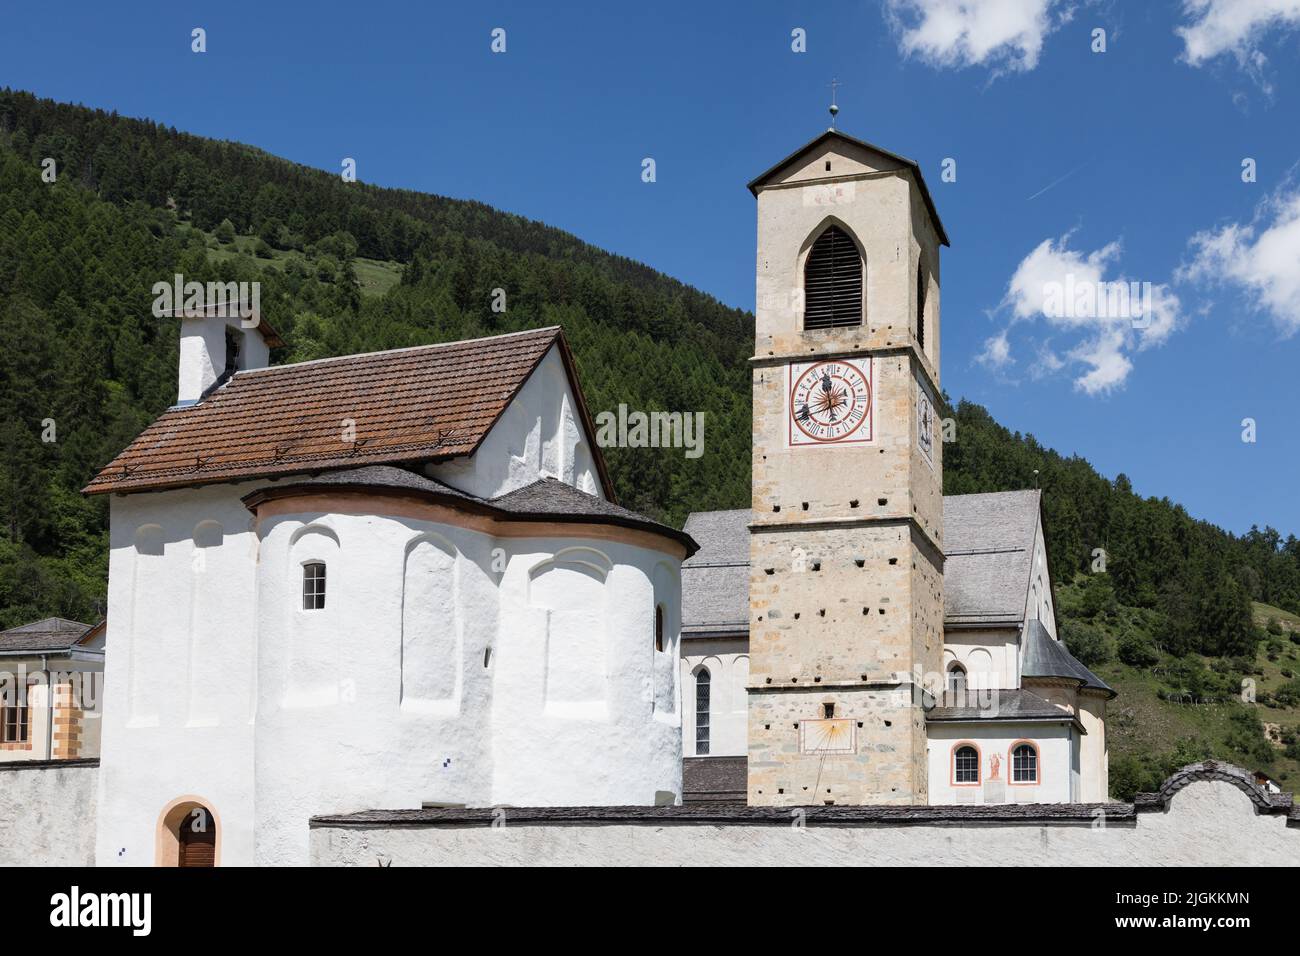 Abbaye médiévale de Saint-Jean et clocher de Val Müstair dans le canton des Grisons, Suisse. C'est un site classé au patrimoine mondial de l'UNESCO. Banque D'Images